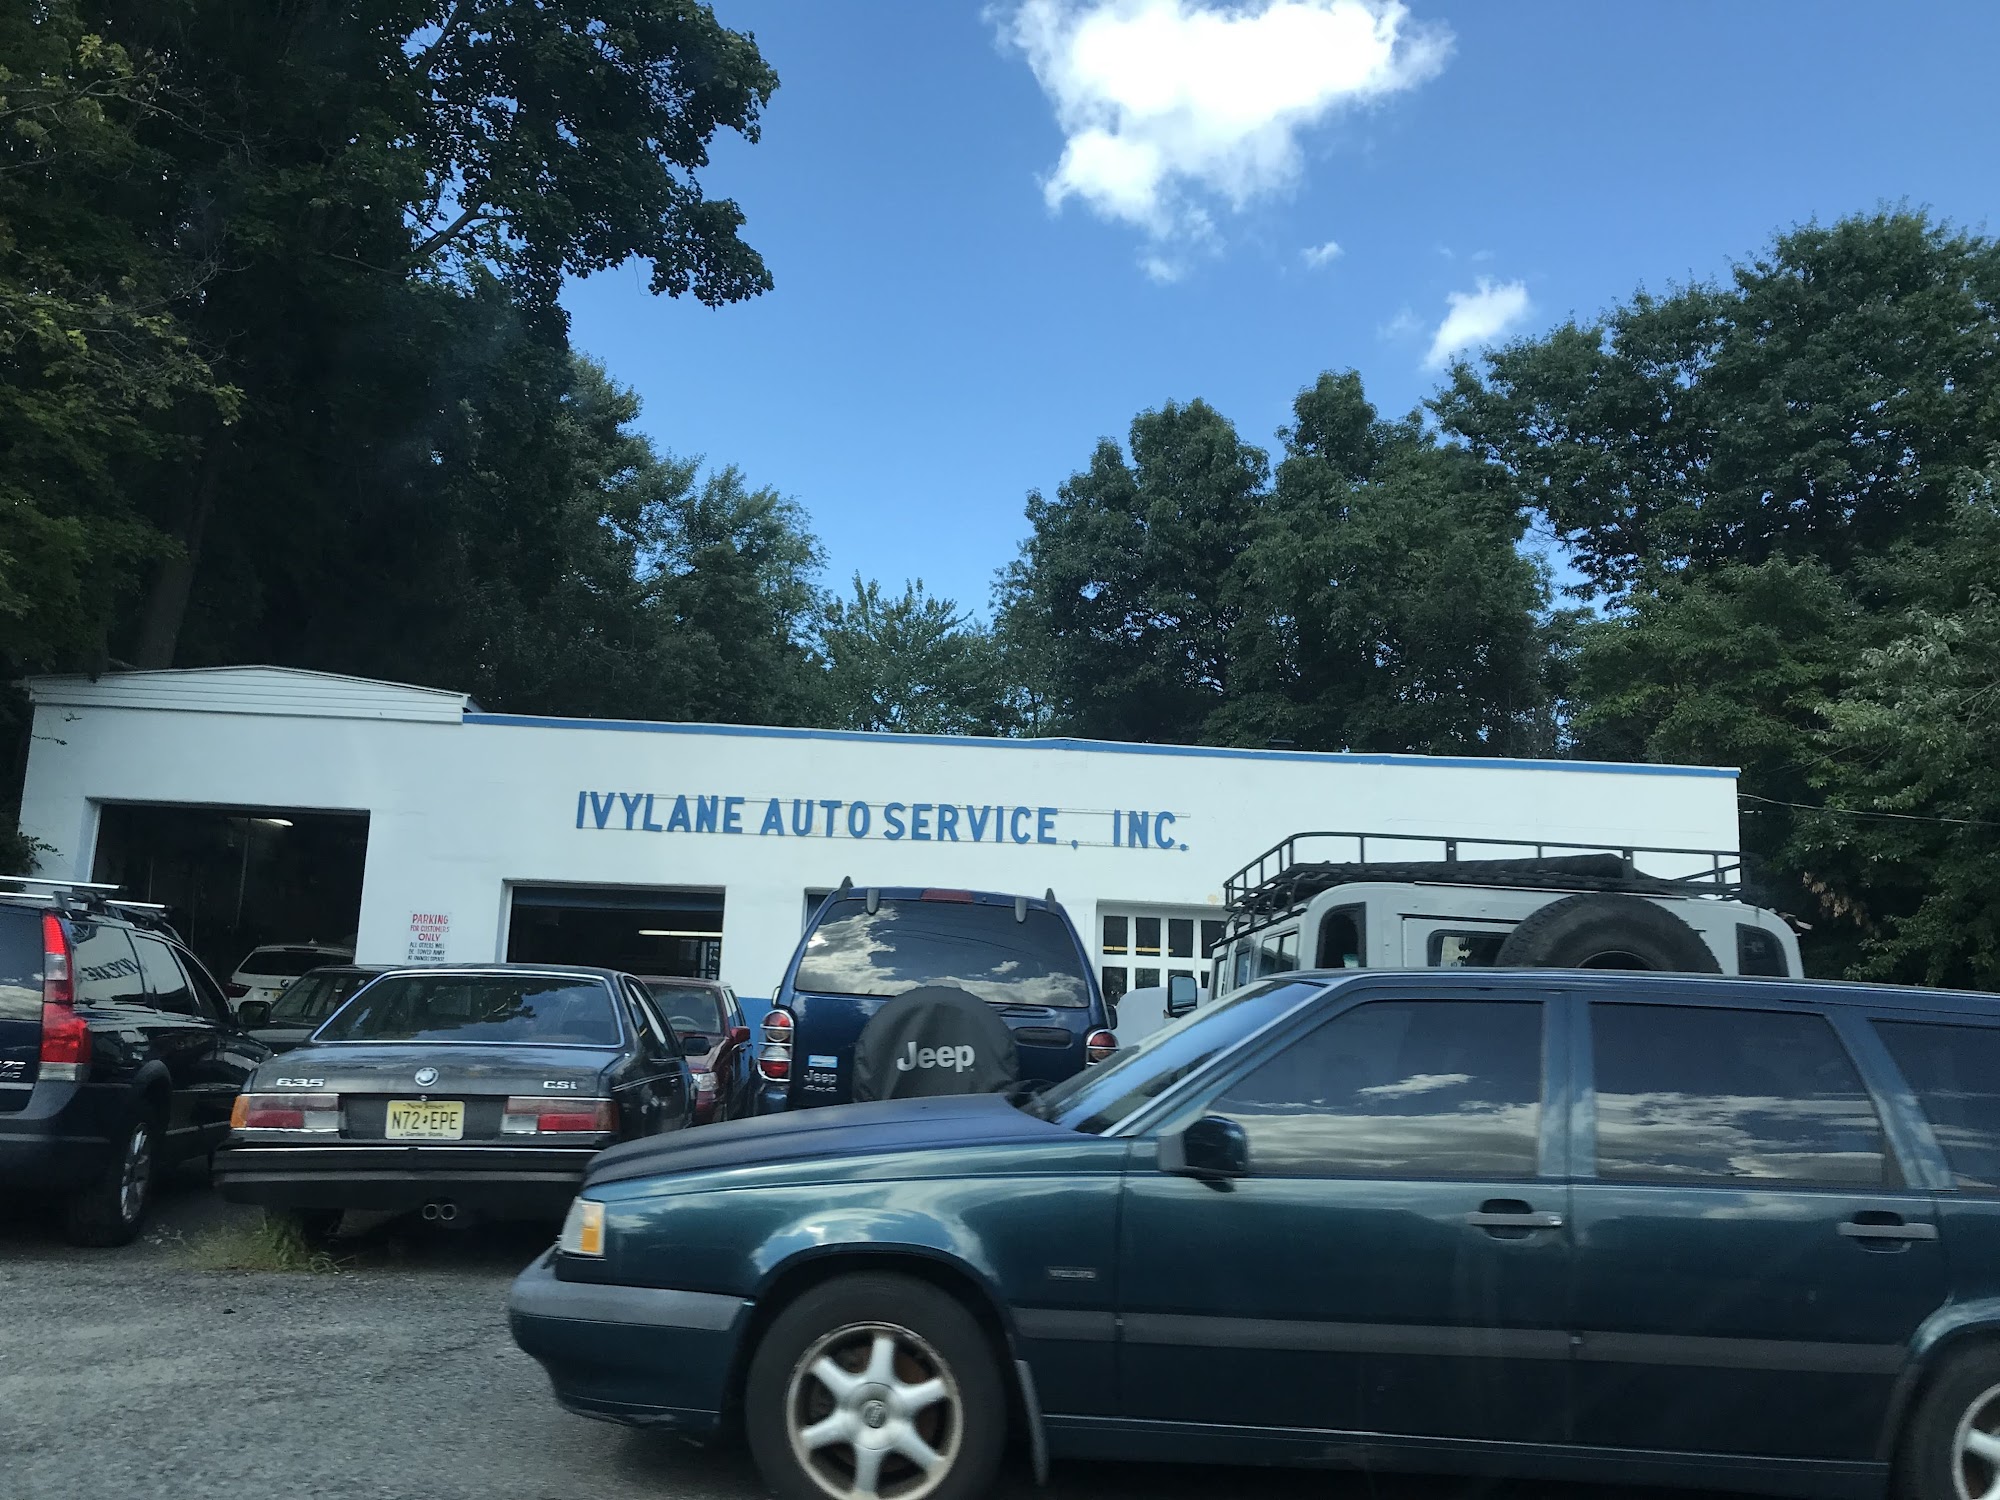 Ivy Lane Auto Services Inc